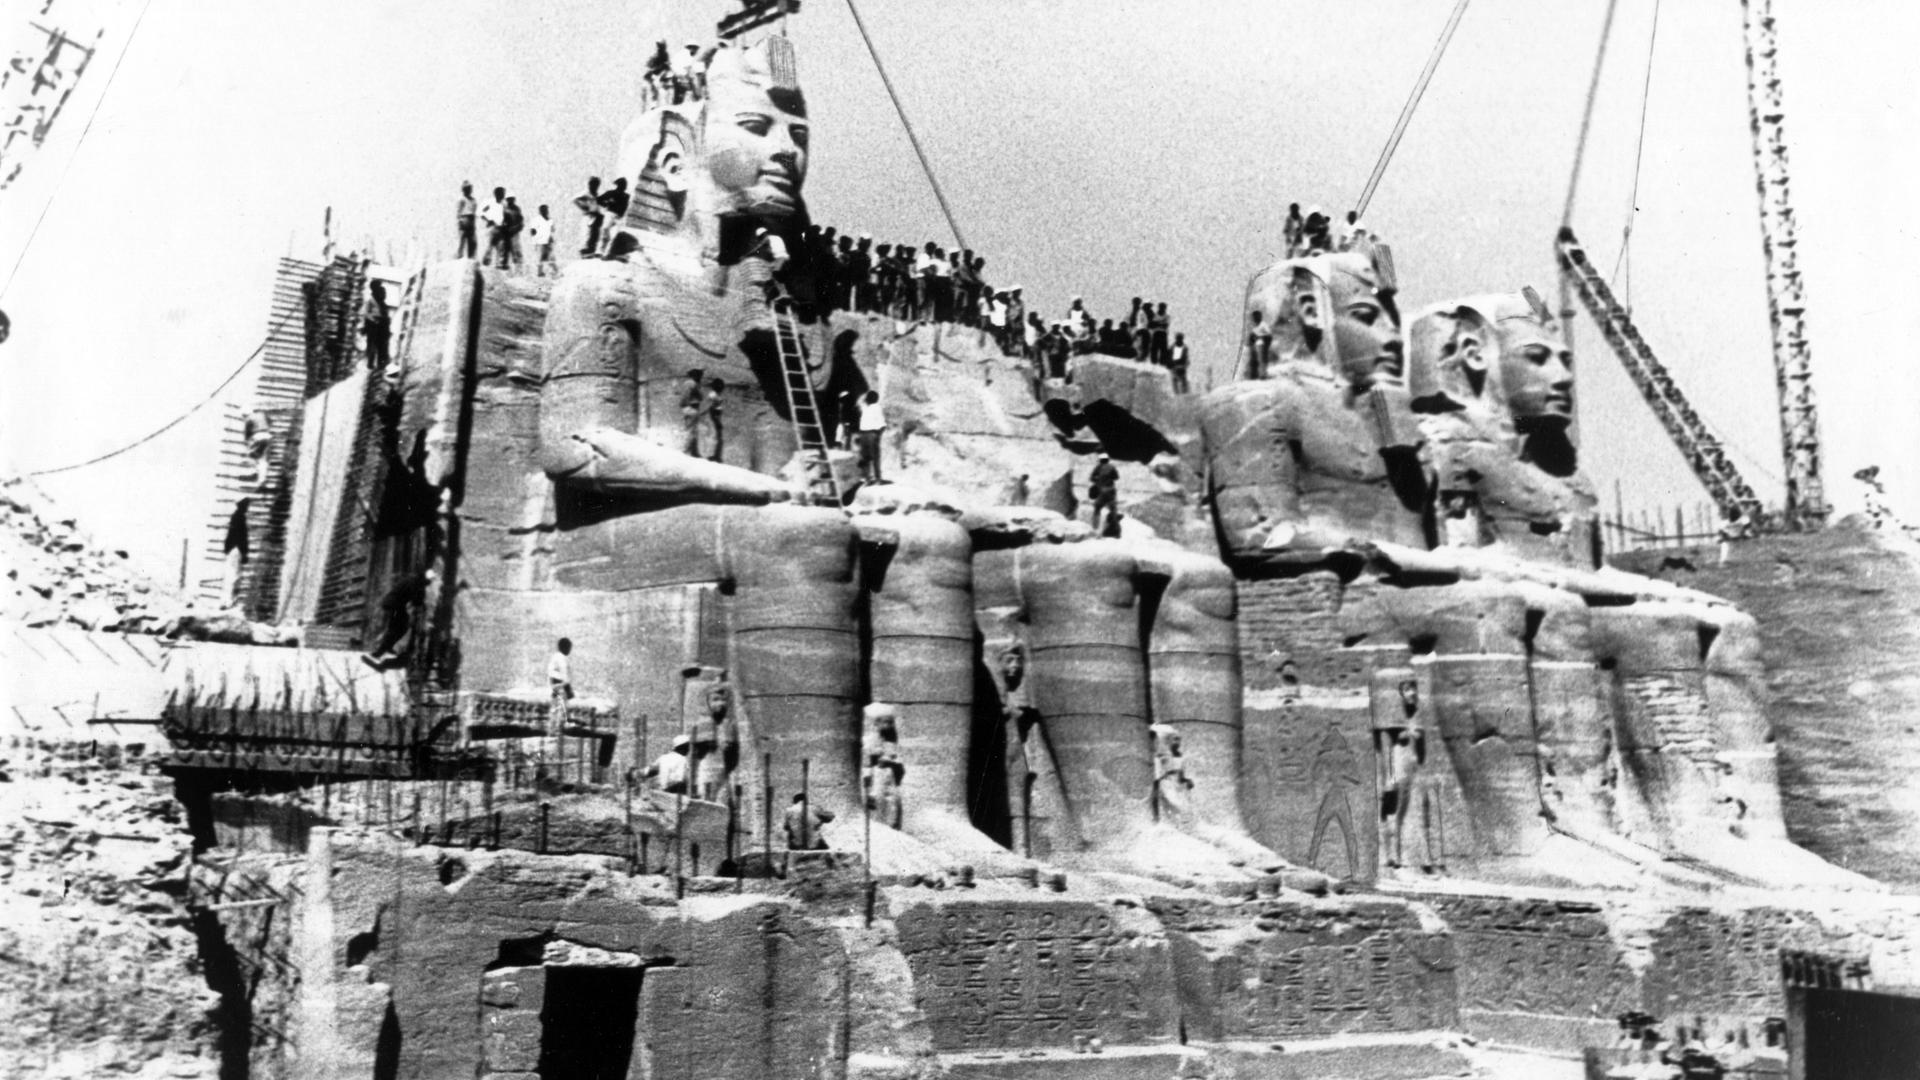 Kurz vor der Vollendung steht der Tempel von Ramses II. in Abu Simbel im November 1966 auf seinem neuen Standplatz 60 Meter über den Wassern des Stausees. Fast drei Jahre sind vergangen, seit die gigantischen Statuen dem Stausee-Projekt weichen mussten. Die gesamte Tempelanlage von Abu Simbel wurde zwischen 1964 und 1968 im Rahmen eines Unesco-Programms zur Rettung der Heiligtümer vor dem durch den Bau des Assuan-Staudamms verursachten Nilhochwasser demontiert und an einer höher gelegenen Stelle wiederaufgebaut.